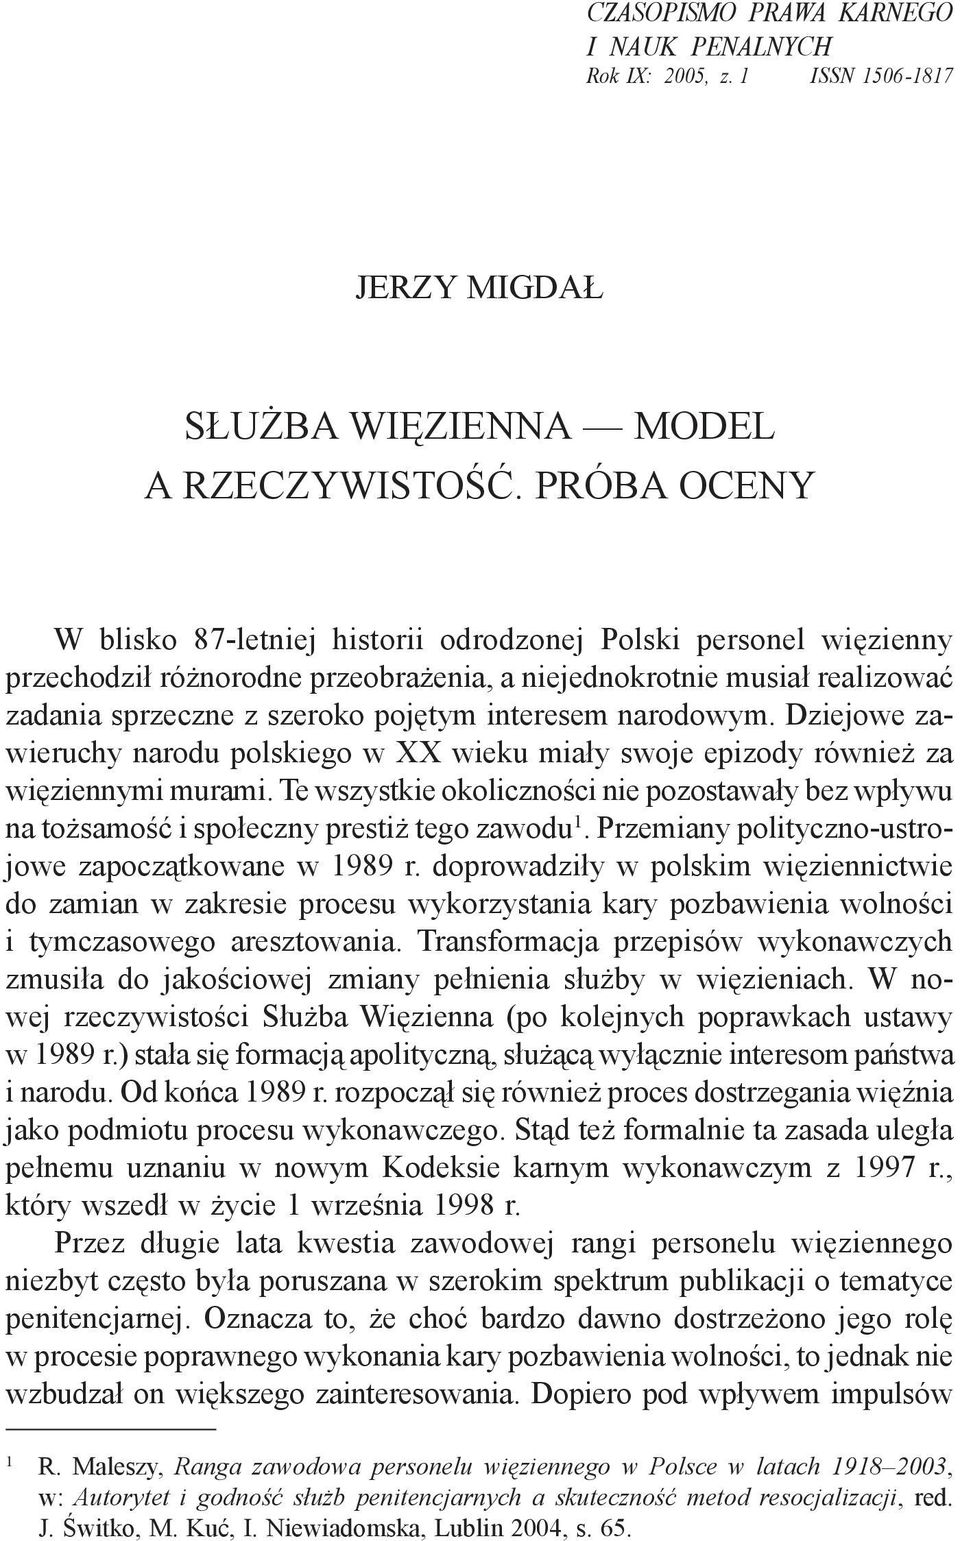 narodowym. Dziejowe zawieruchy narodu polskiego w XX wieku miały swoje epizody również za więziennymi murami.